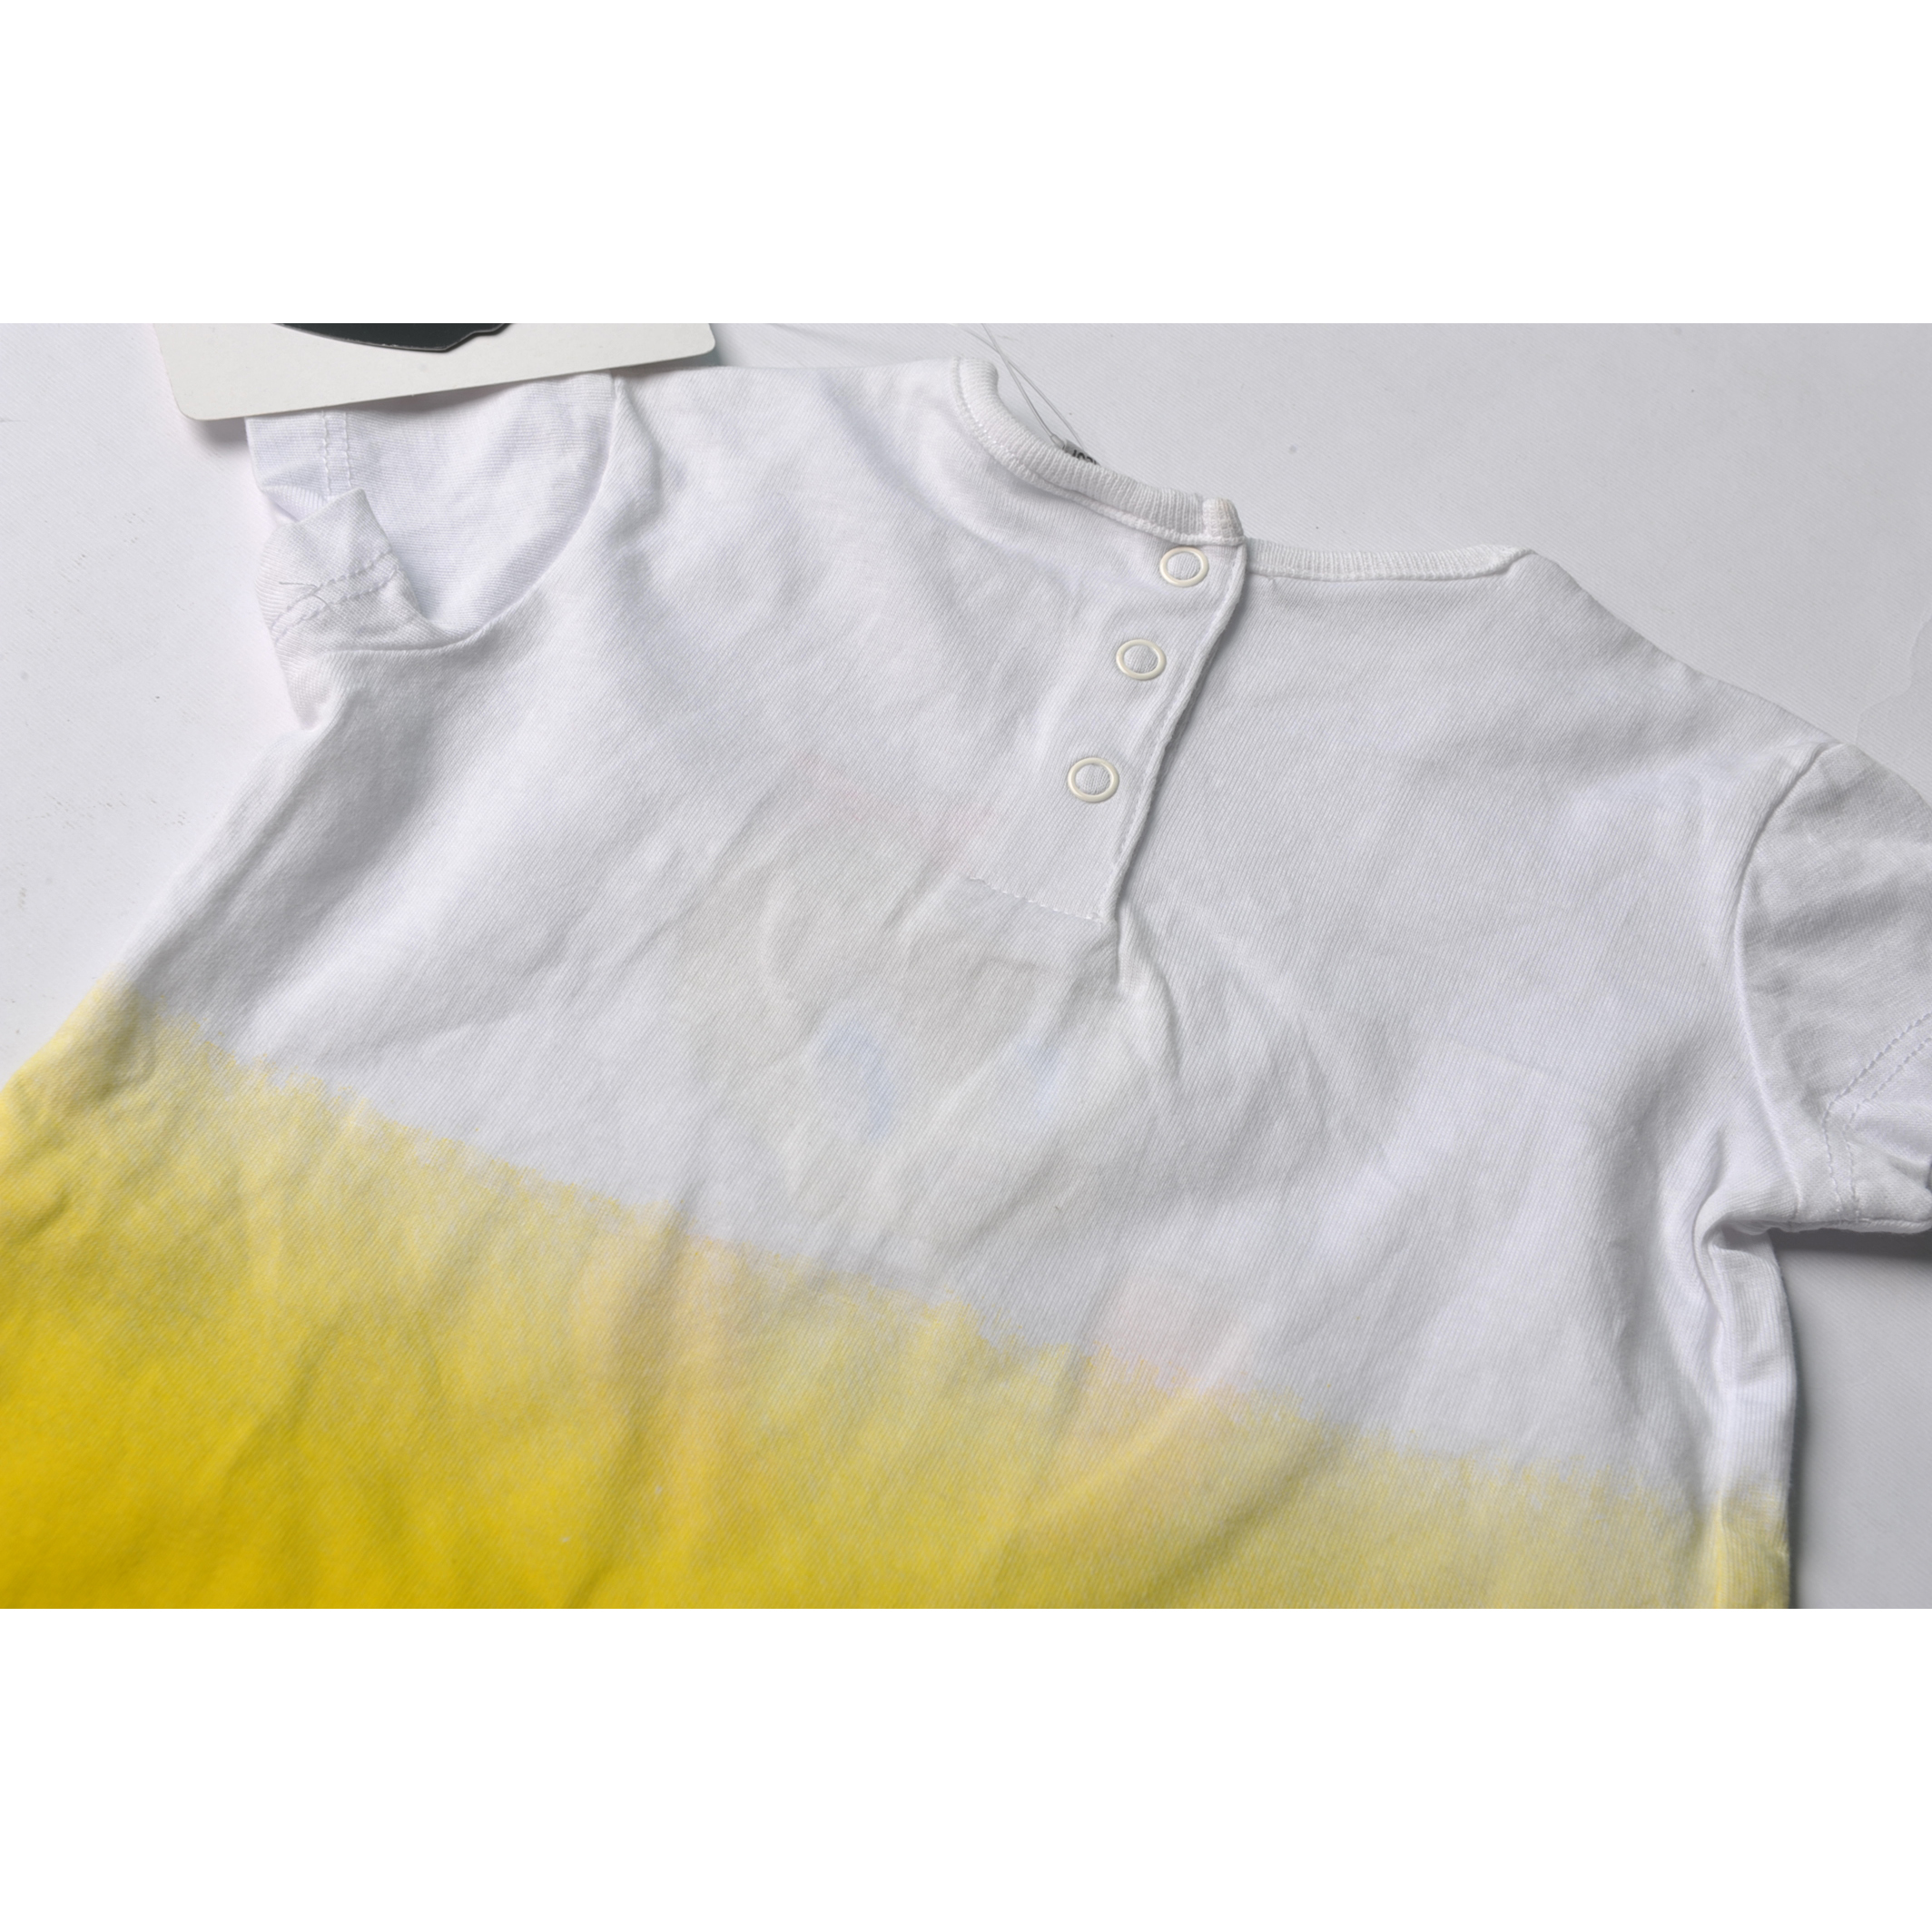 تی شرت آستین کوتاه نوزادی لونی تونز مدل توییتی 63527 -  - 6